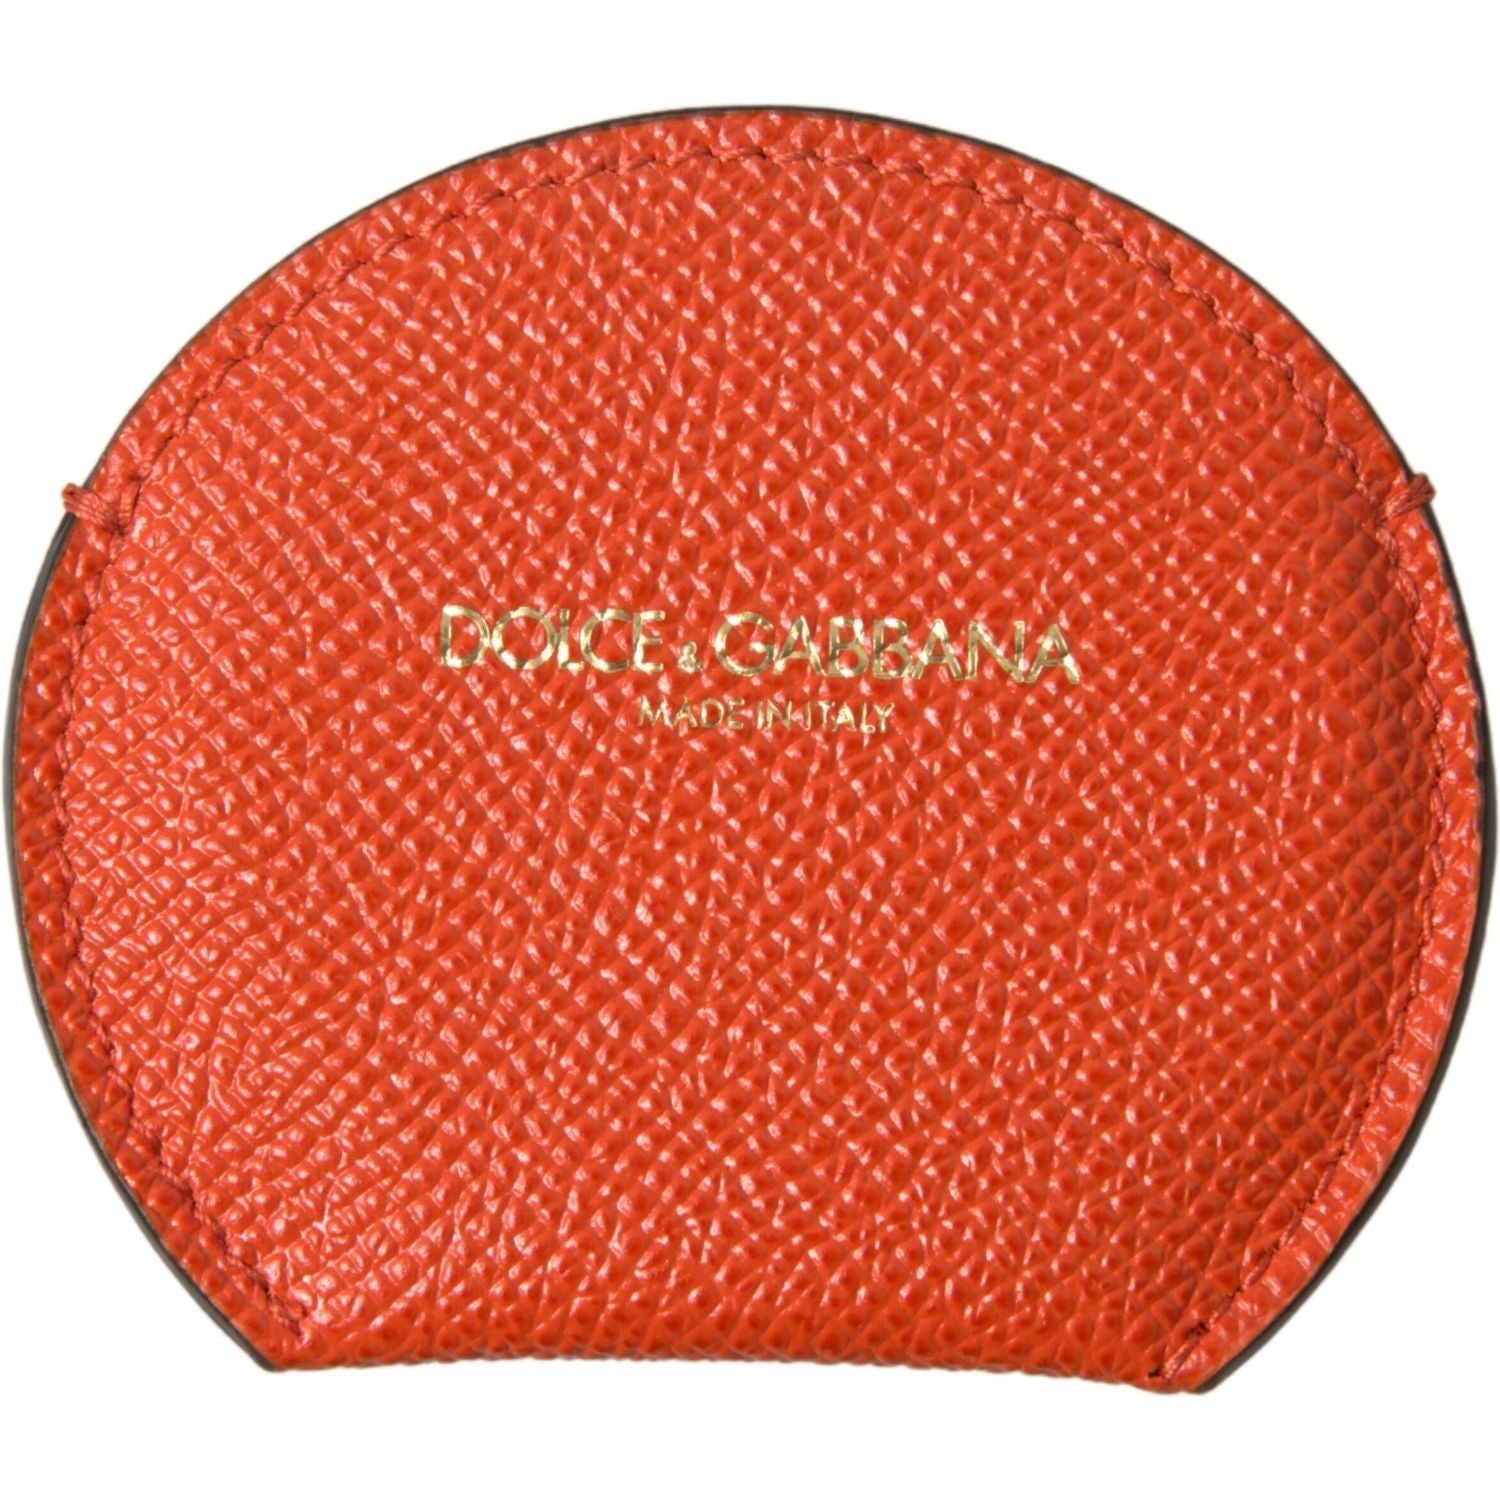 Dolce & Gabbana | Orange Calfskin Leather Round Logo Hand Mirror Holder | McRichard Designer Brands